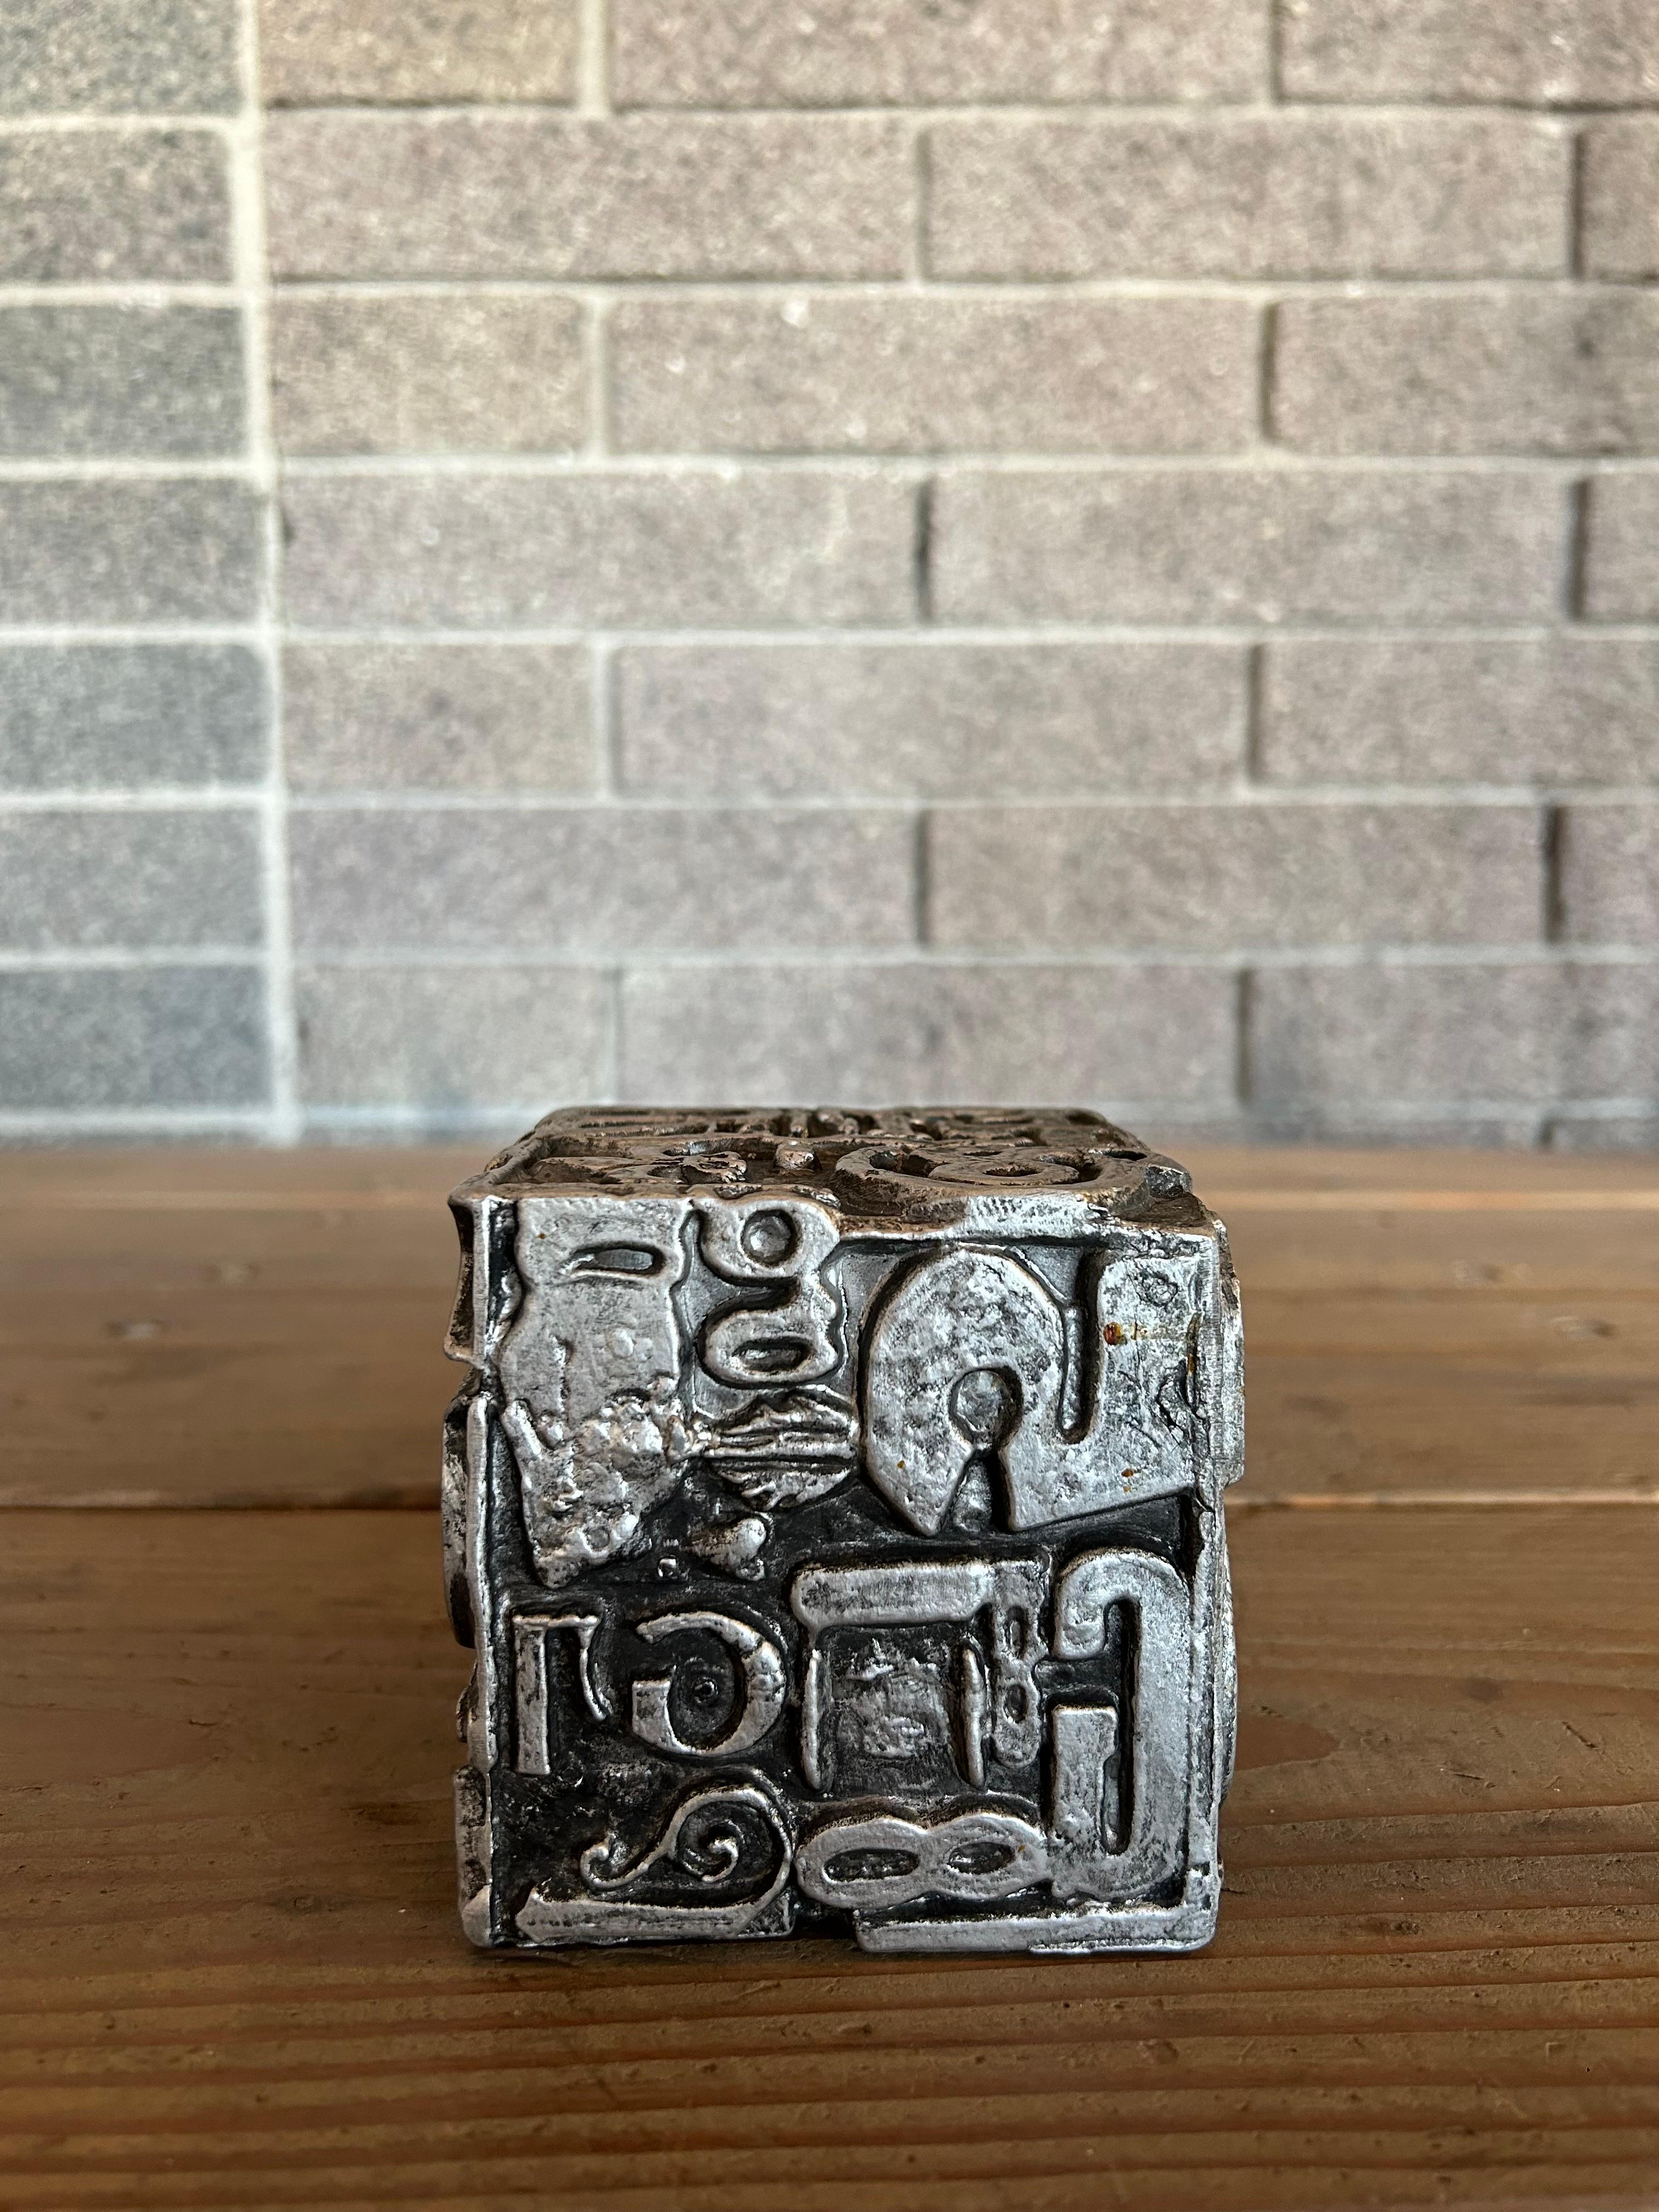 Dekorative MCM-Würfel-Skulptur aus Aluminium aus den 1970er Jahren, verziert mit Text, Schriftzug und grafischem Design des Künstlers Sheldon Rose. 